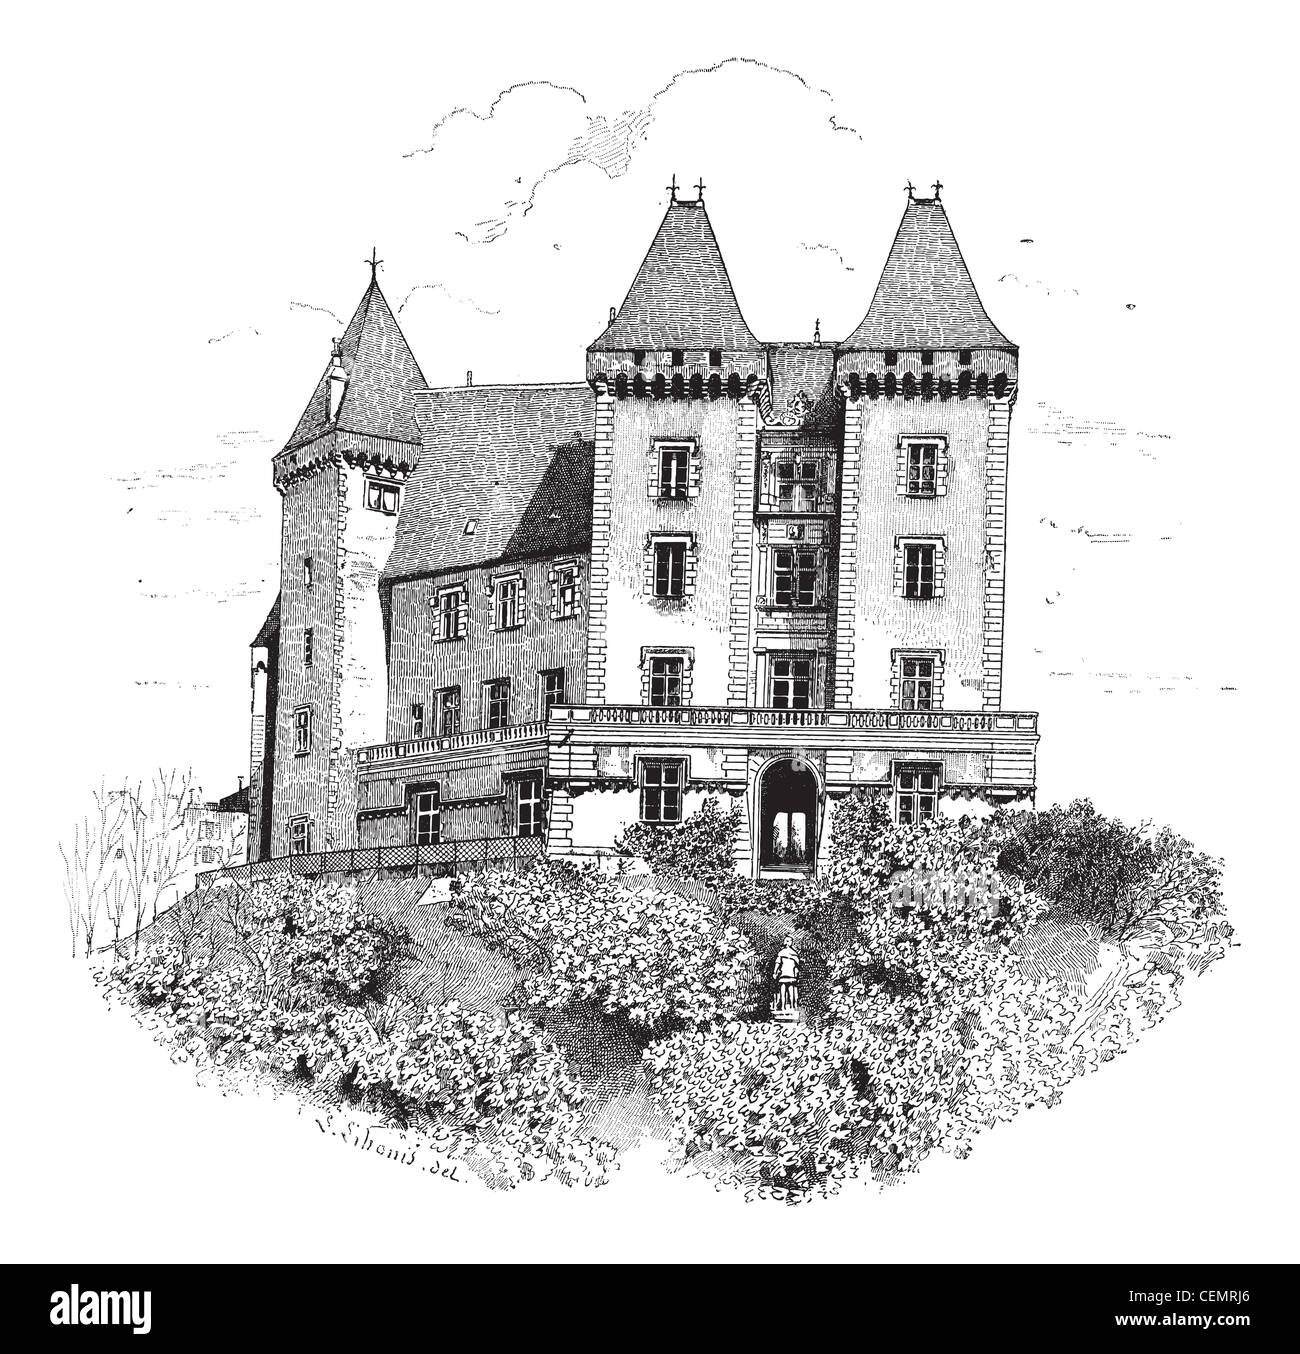 Vieille illustration gravée de château de Pau ou château de Pau. Dictionnaire des mots et des choses - Larive et Fleury ? 1895 Banque D'Images